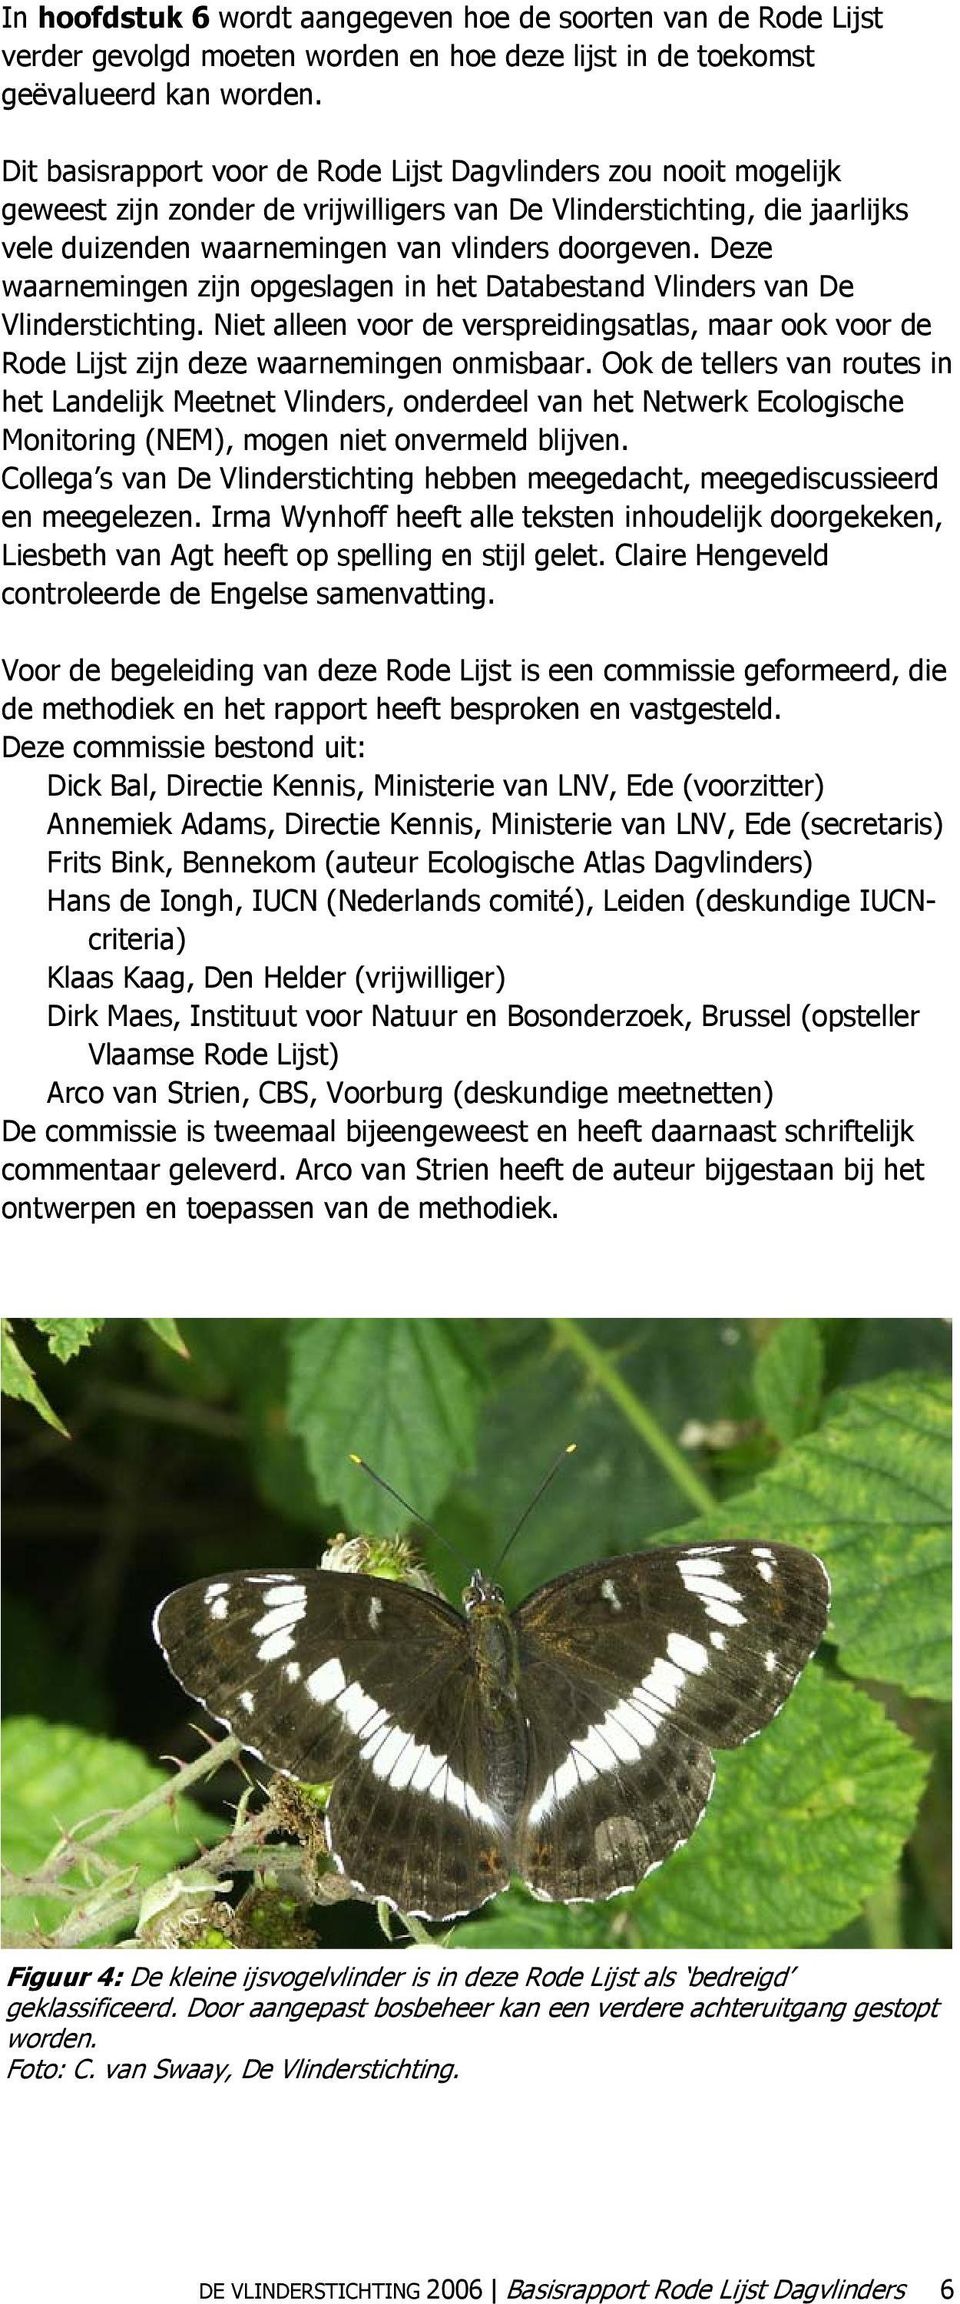 Deze waarnemingen zijn opgeslagen in het Databestand Vlinders van De Vlinderstichting. Niet alleen voor de verspreidingsatlas, maar ook voor de Rode Lijst zijn deze waarnemingen onmisbaar.